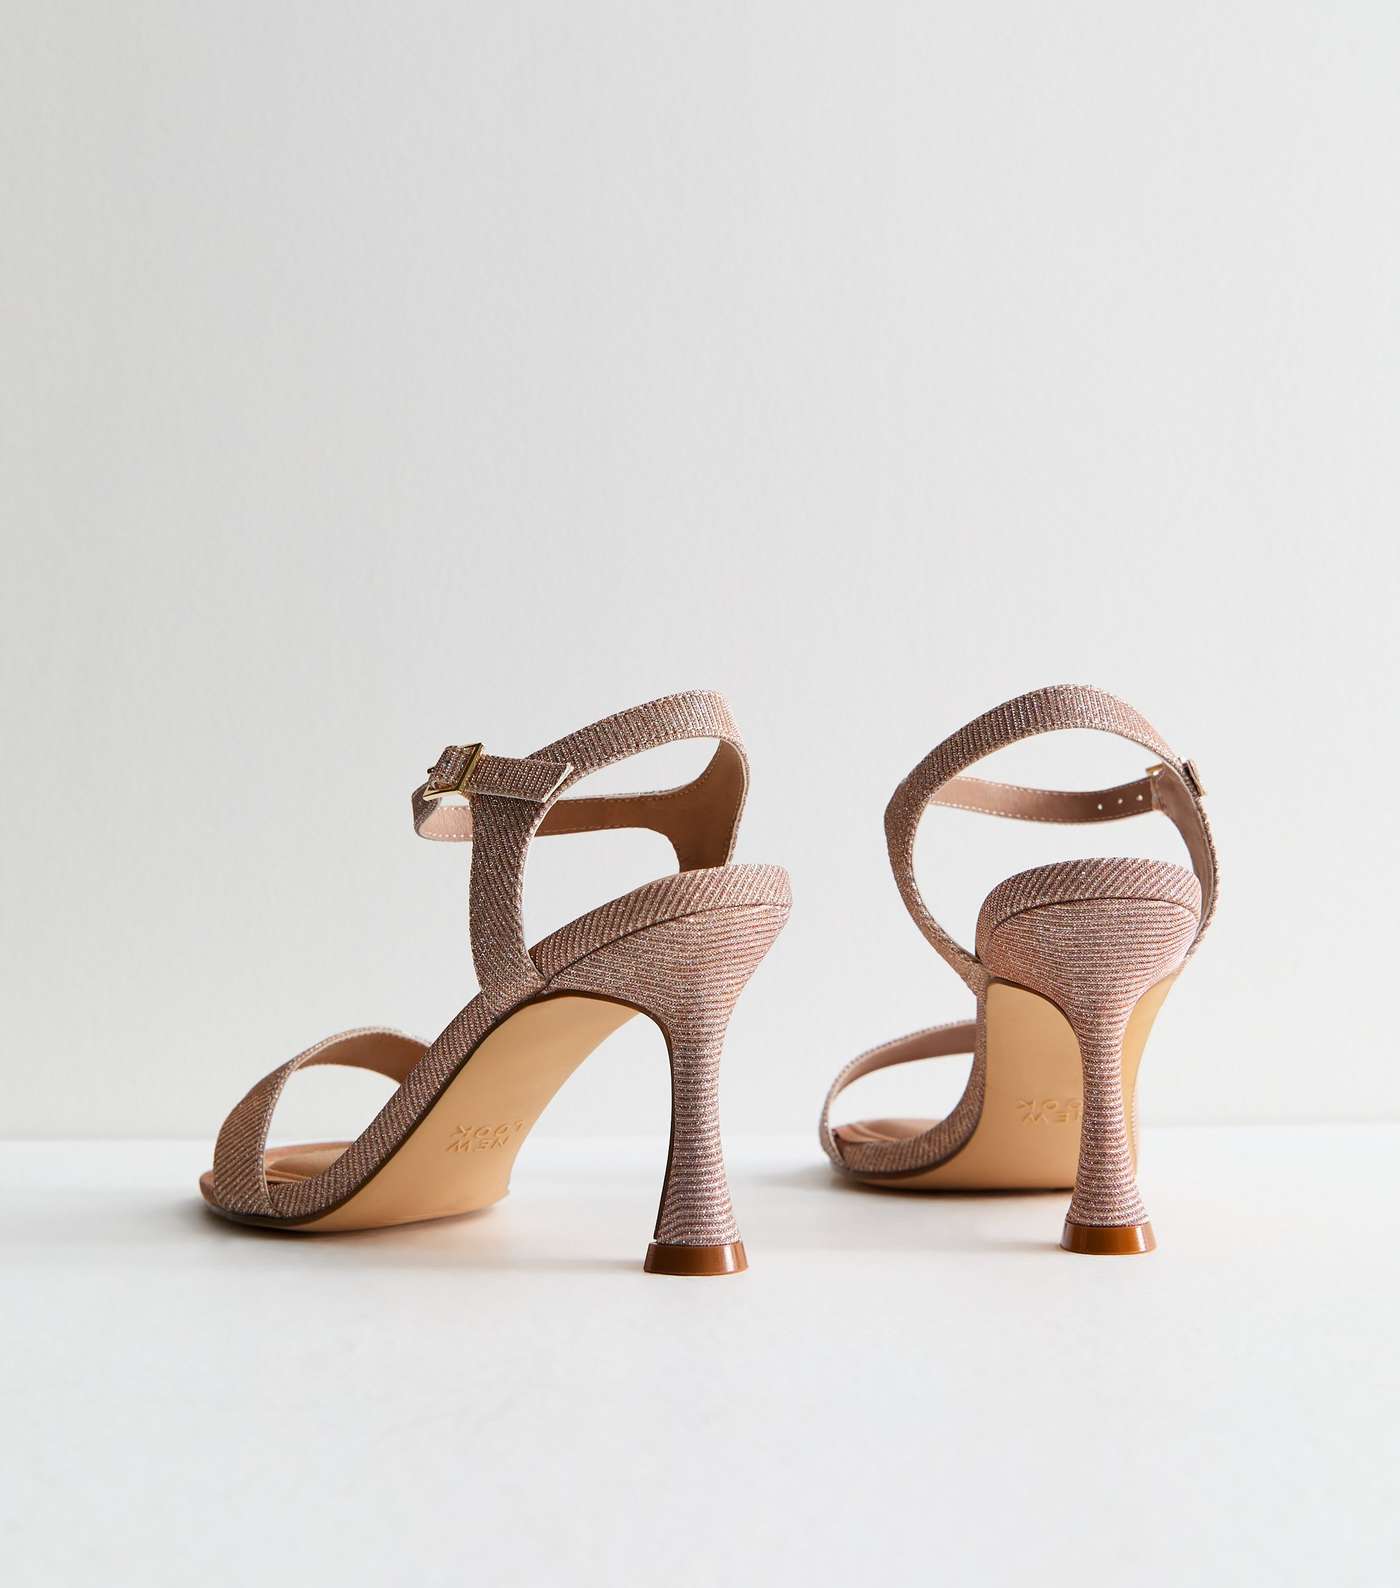 Rose Gold Shimmer 2 Part Stiletto Heel Sandals Image 4